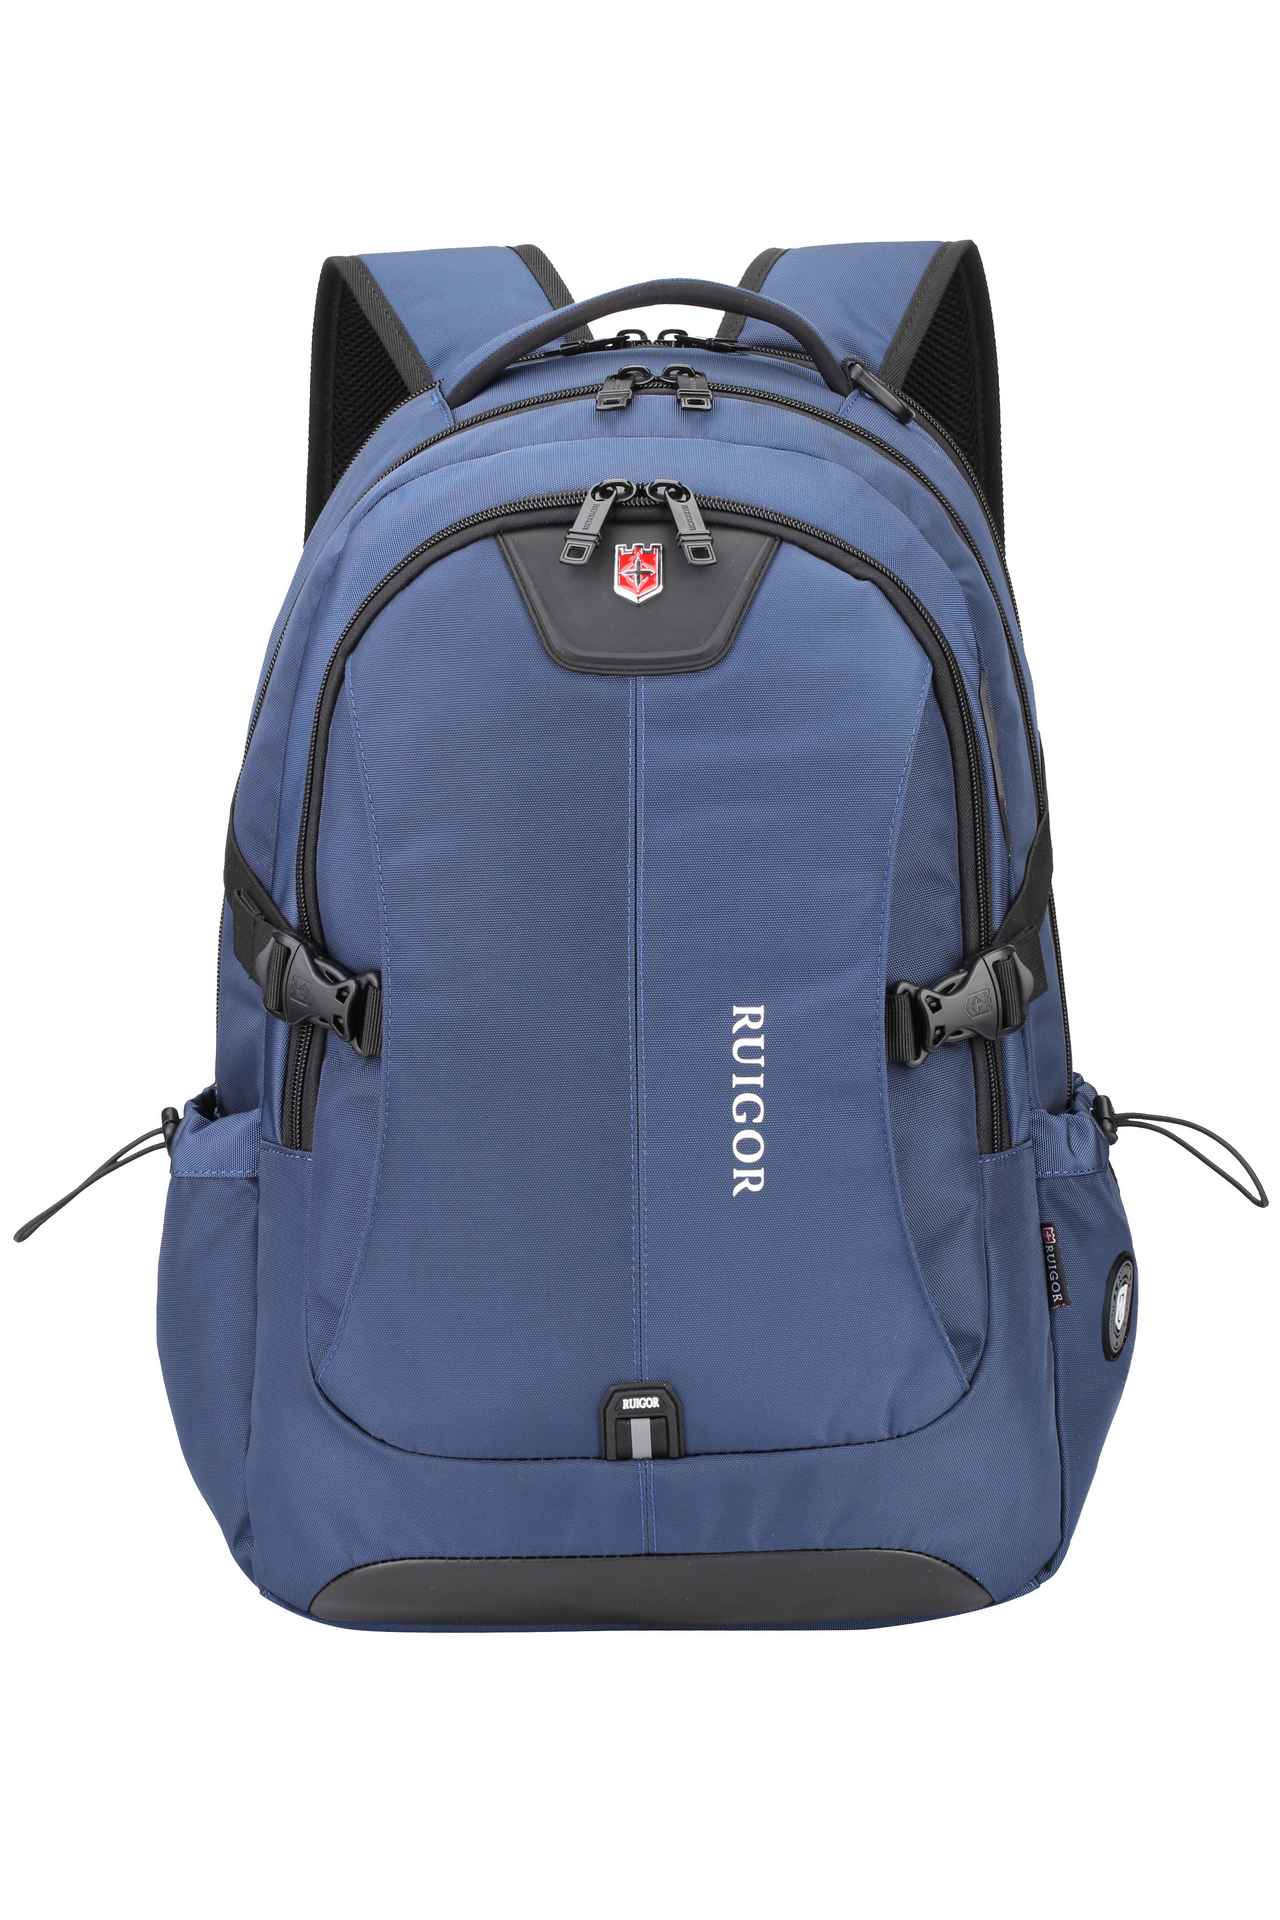 RUIGOR ICON 47 Laptop Backpack Blue – Ruigor